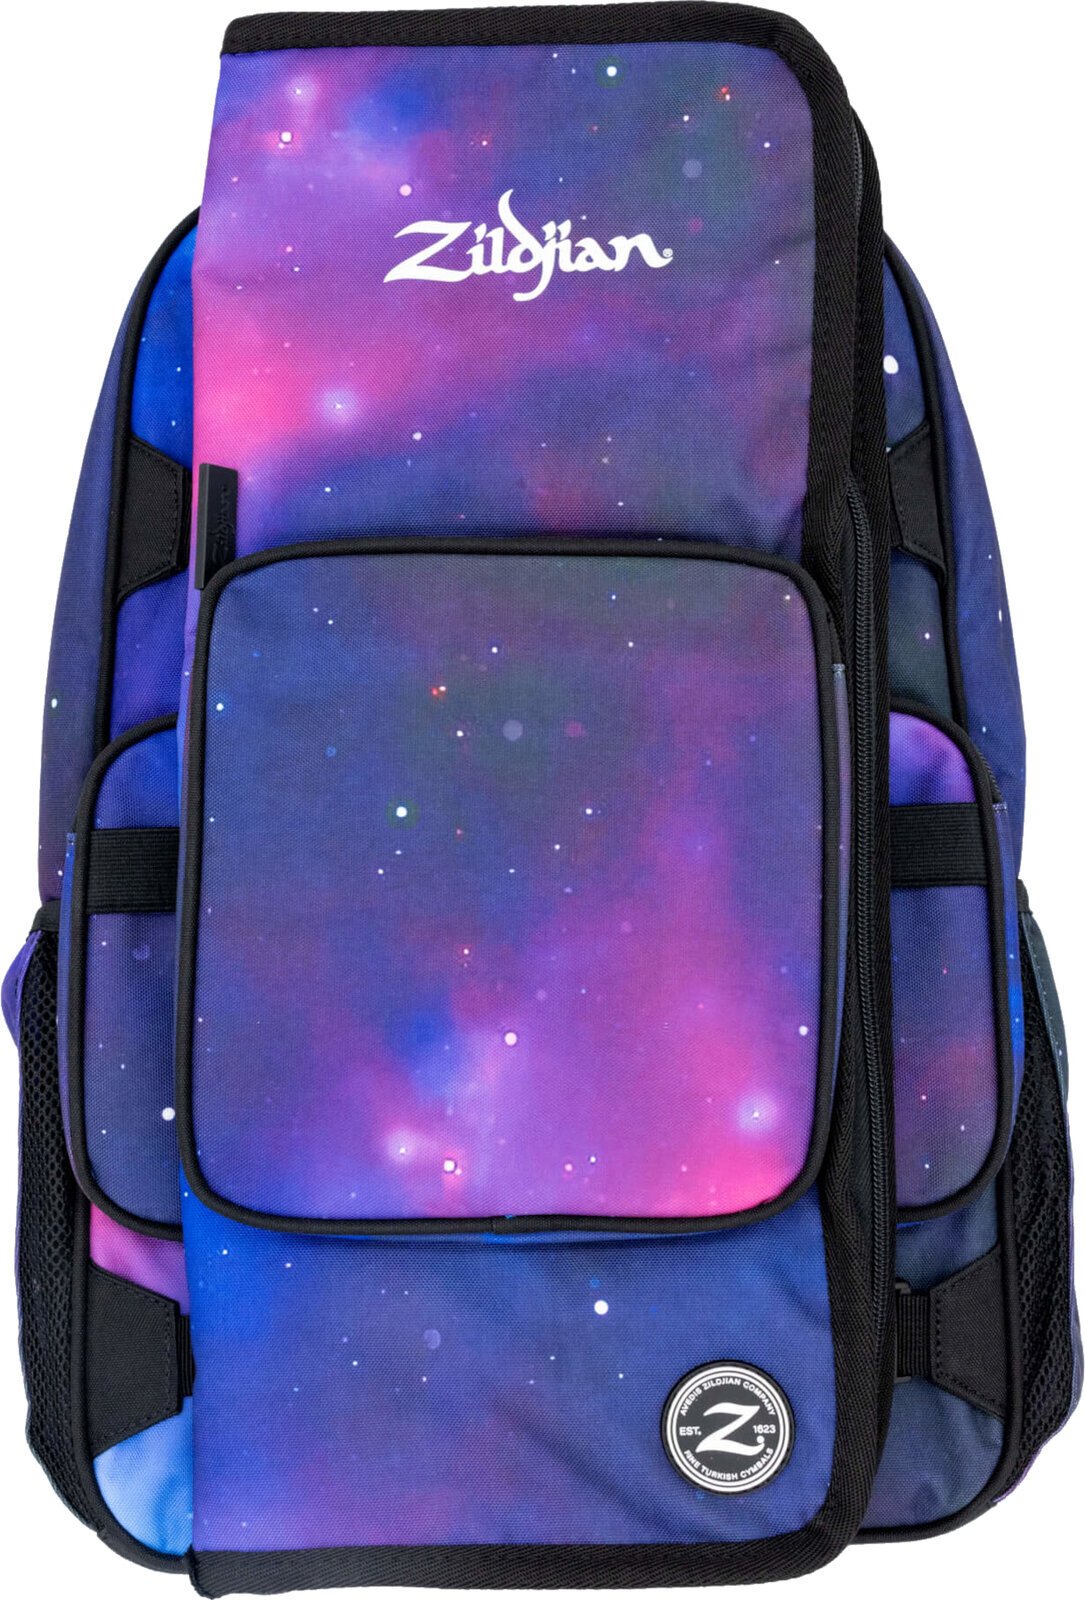 Beschermhoes voor drumstokken Zildjian Student Backpack Purple Galaxy Beschermhoes voor drumstokken